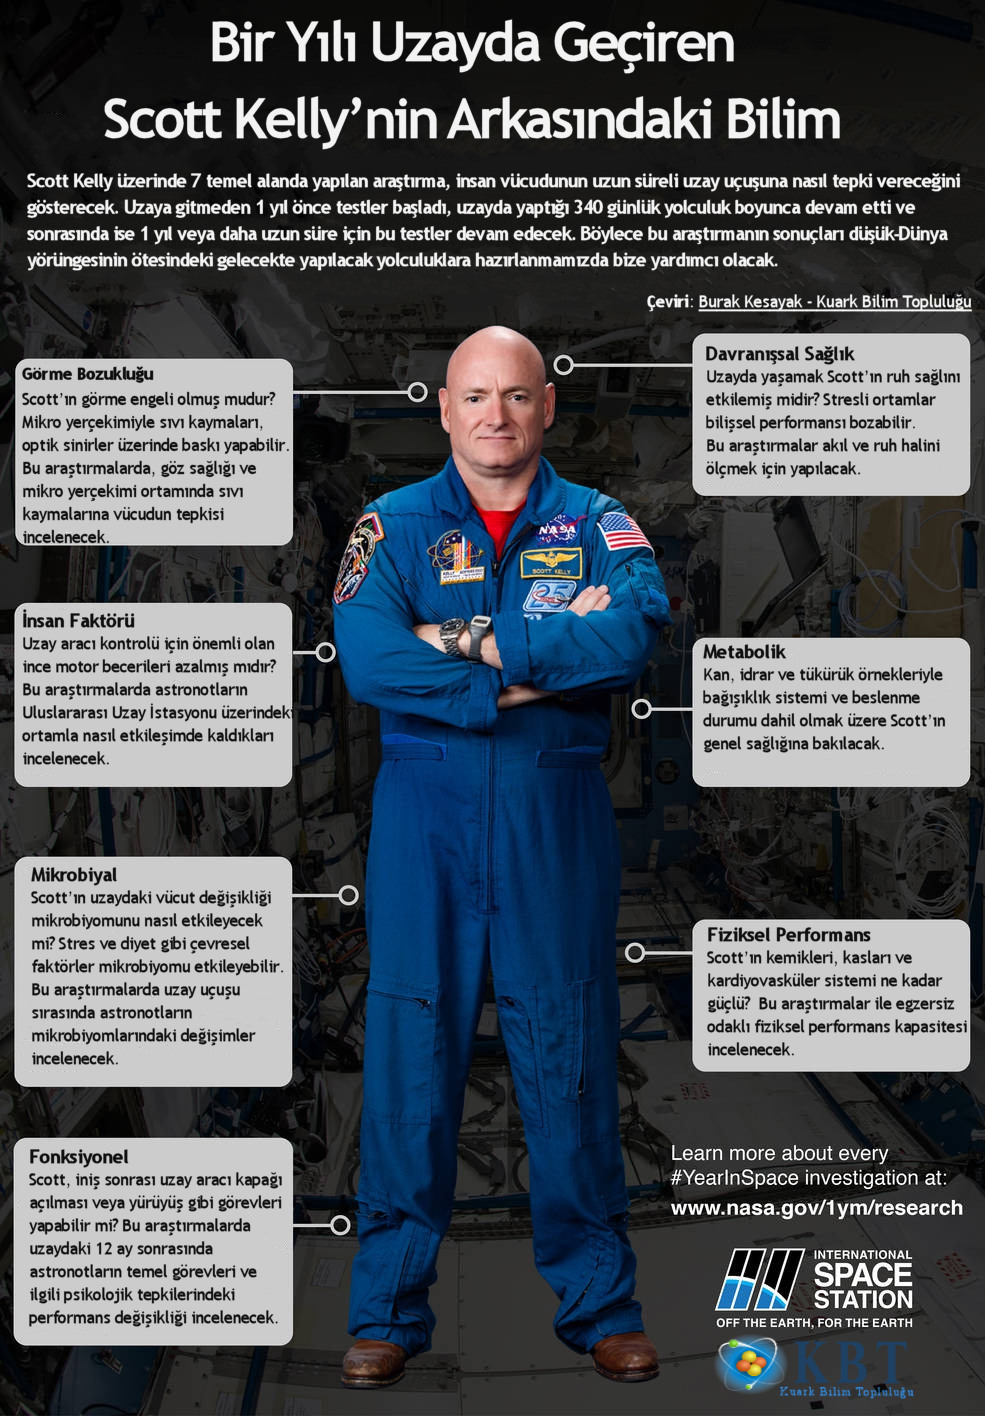 Gelecek uzay görevleri için astronotlar üzerinde gerçekleştirilen test ve araştırmaların Scott Kelly üzerinde gösterimi. Credit: NASA, Çeviri: Burak Kesayak - Kuark Bilim Topluluğu